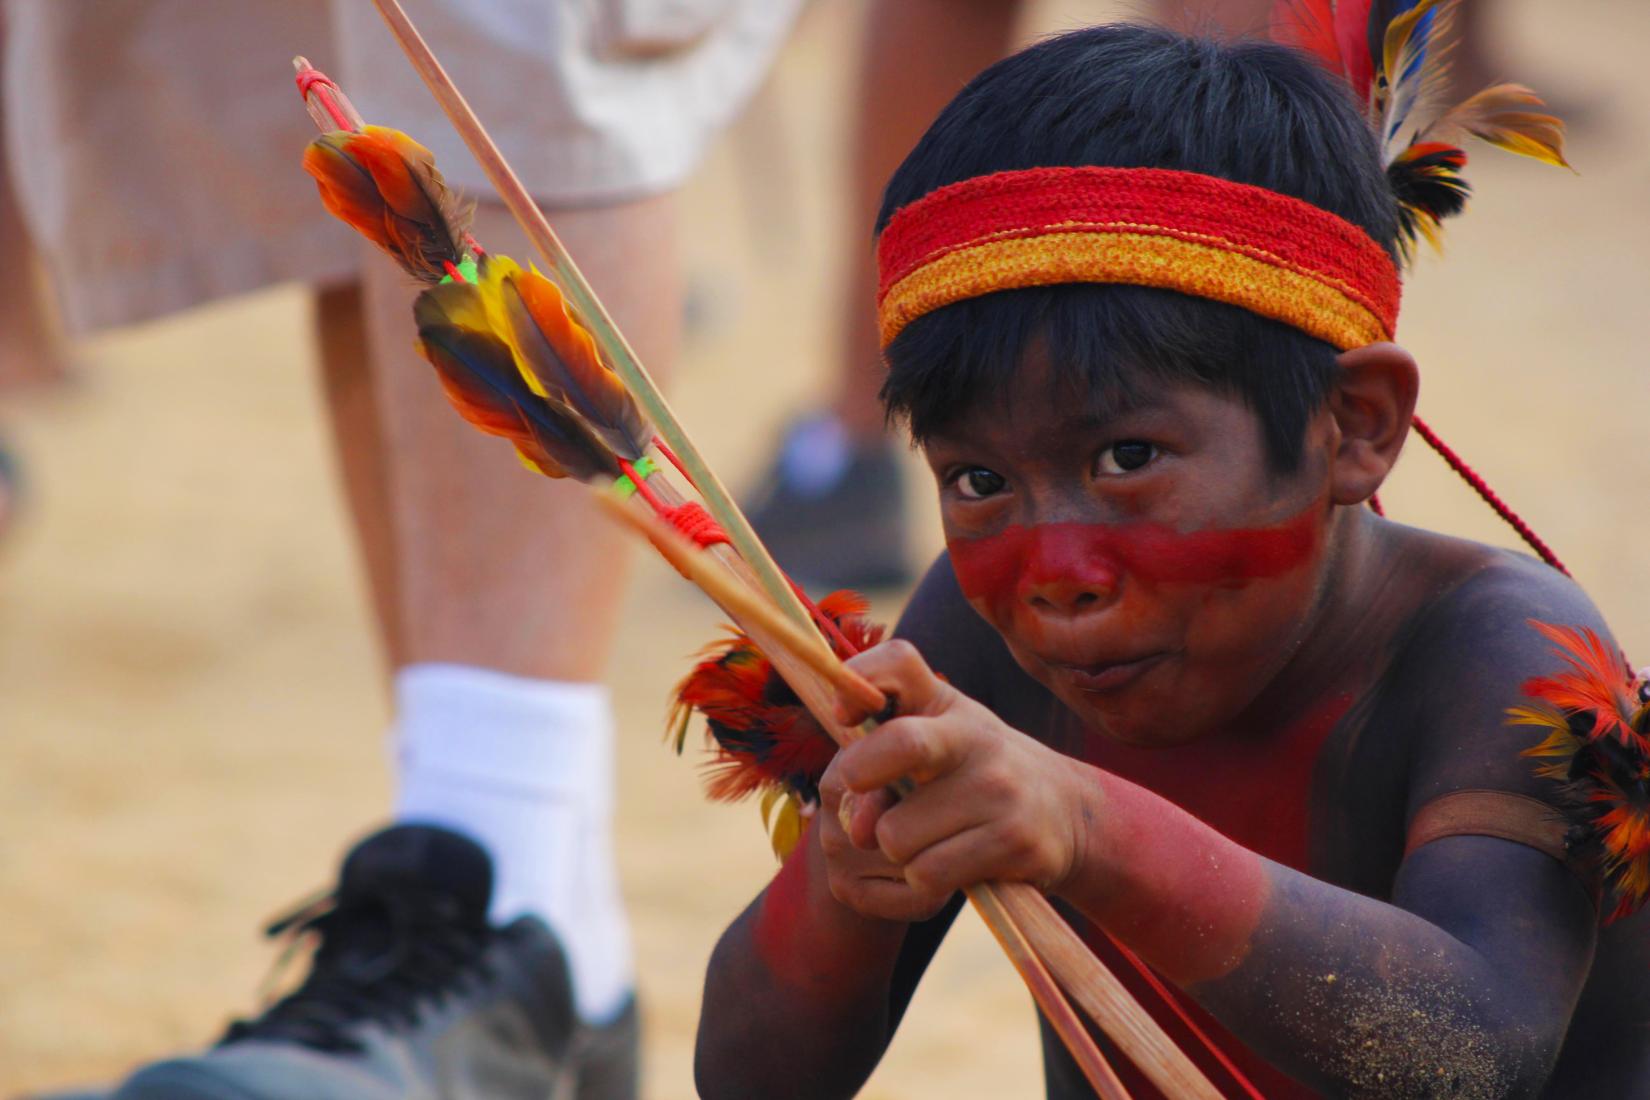 Dia Internacional dos Povos Indígenas